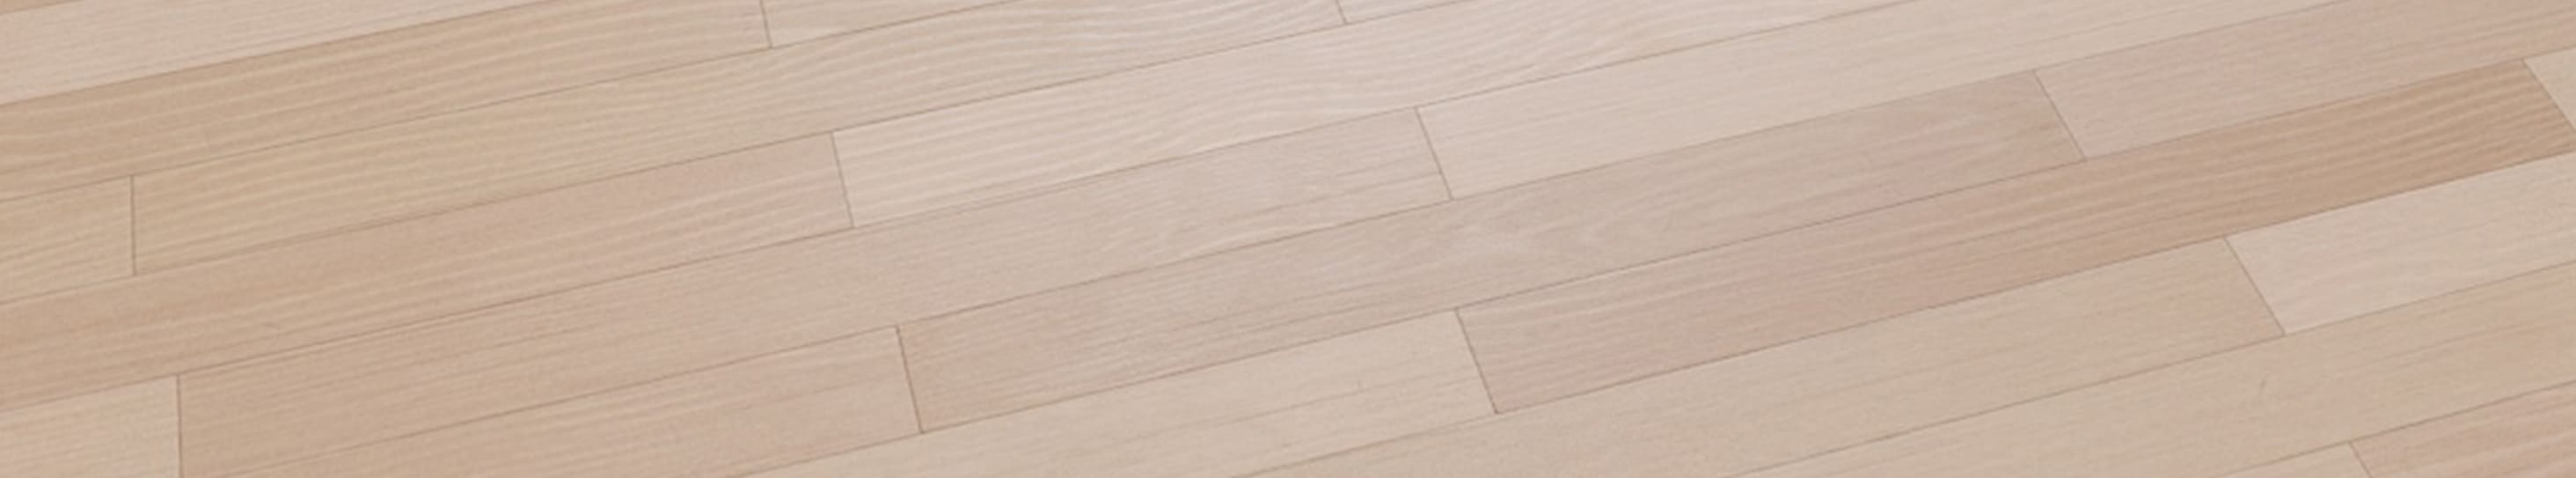 1K, 2K, 4K, 8K, 16K Wood Floor Texture